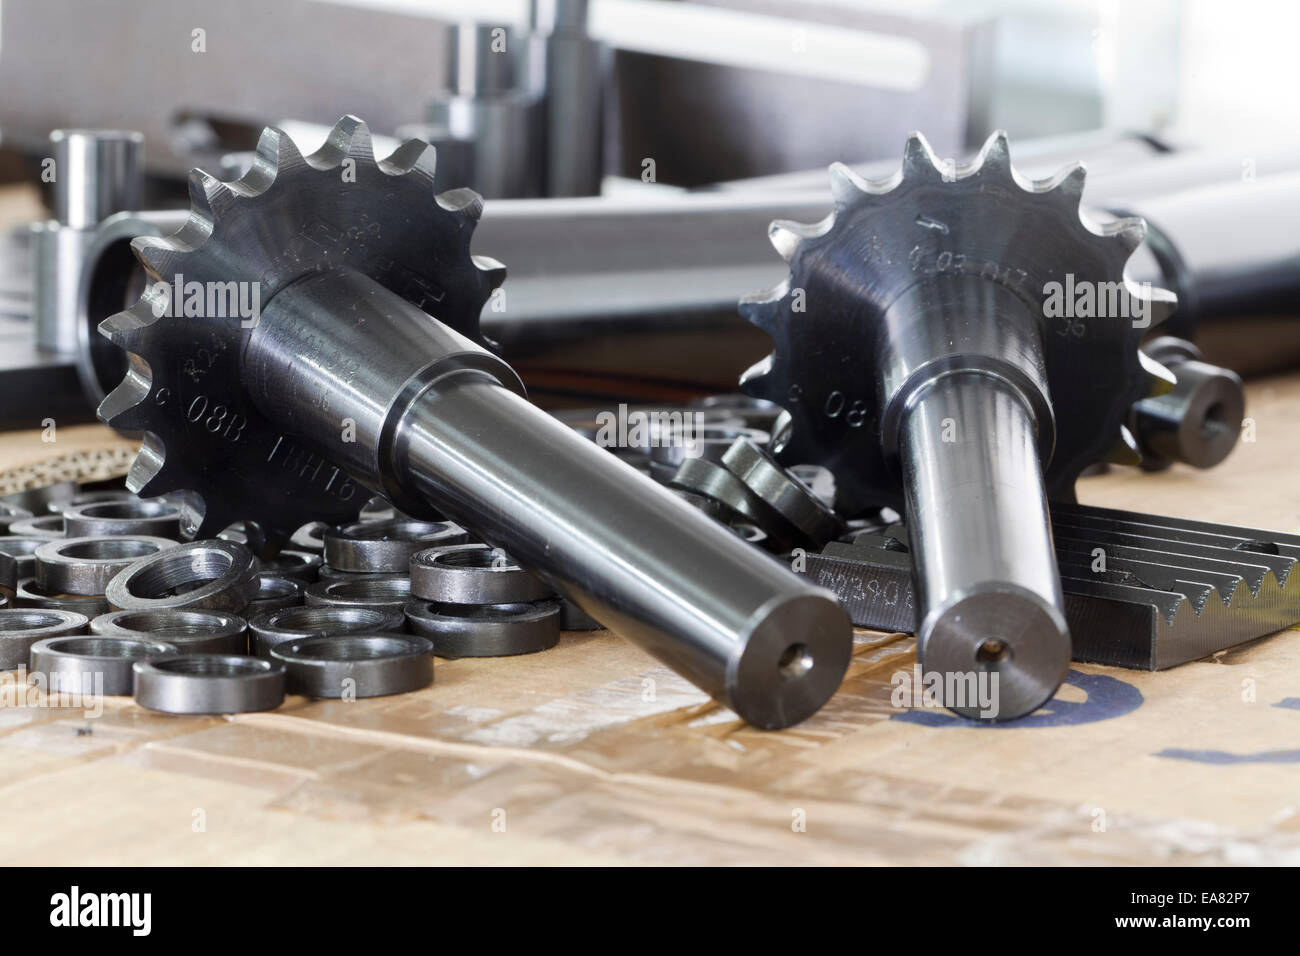 Motor Maschinenkomponenten Motorteile auf Tisch Stockfoto